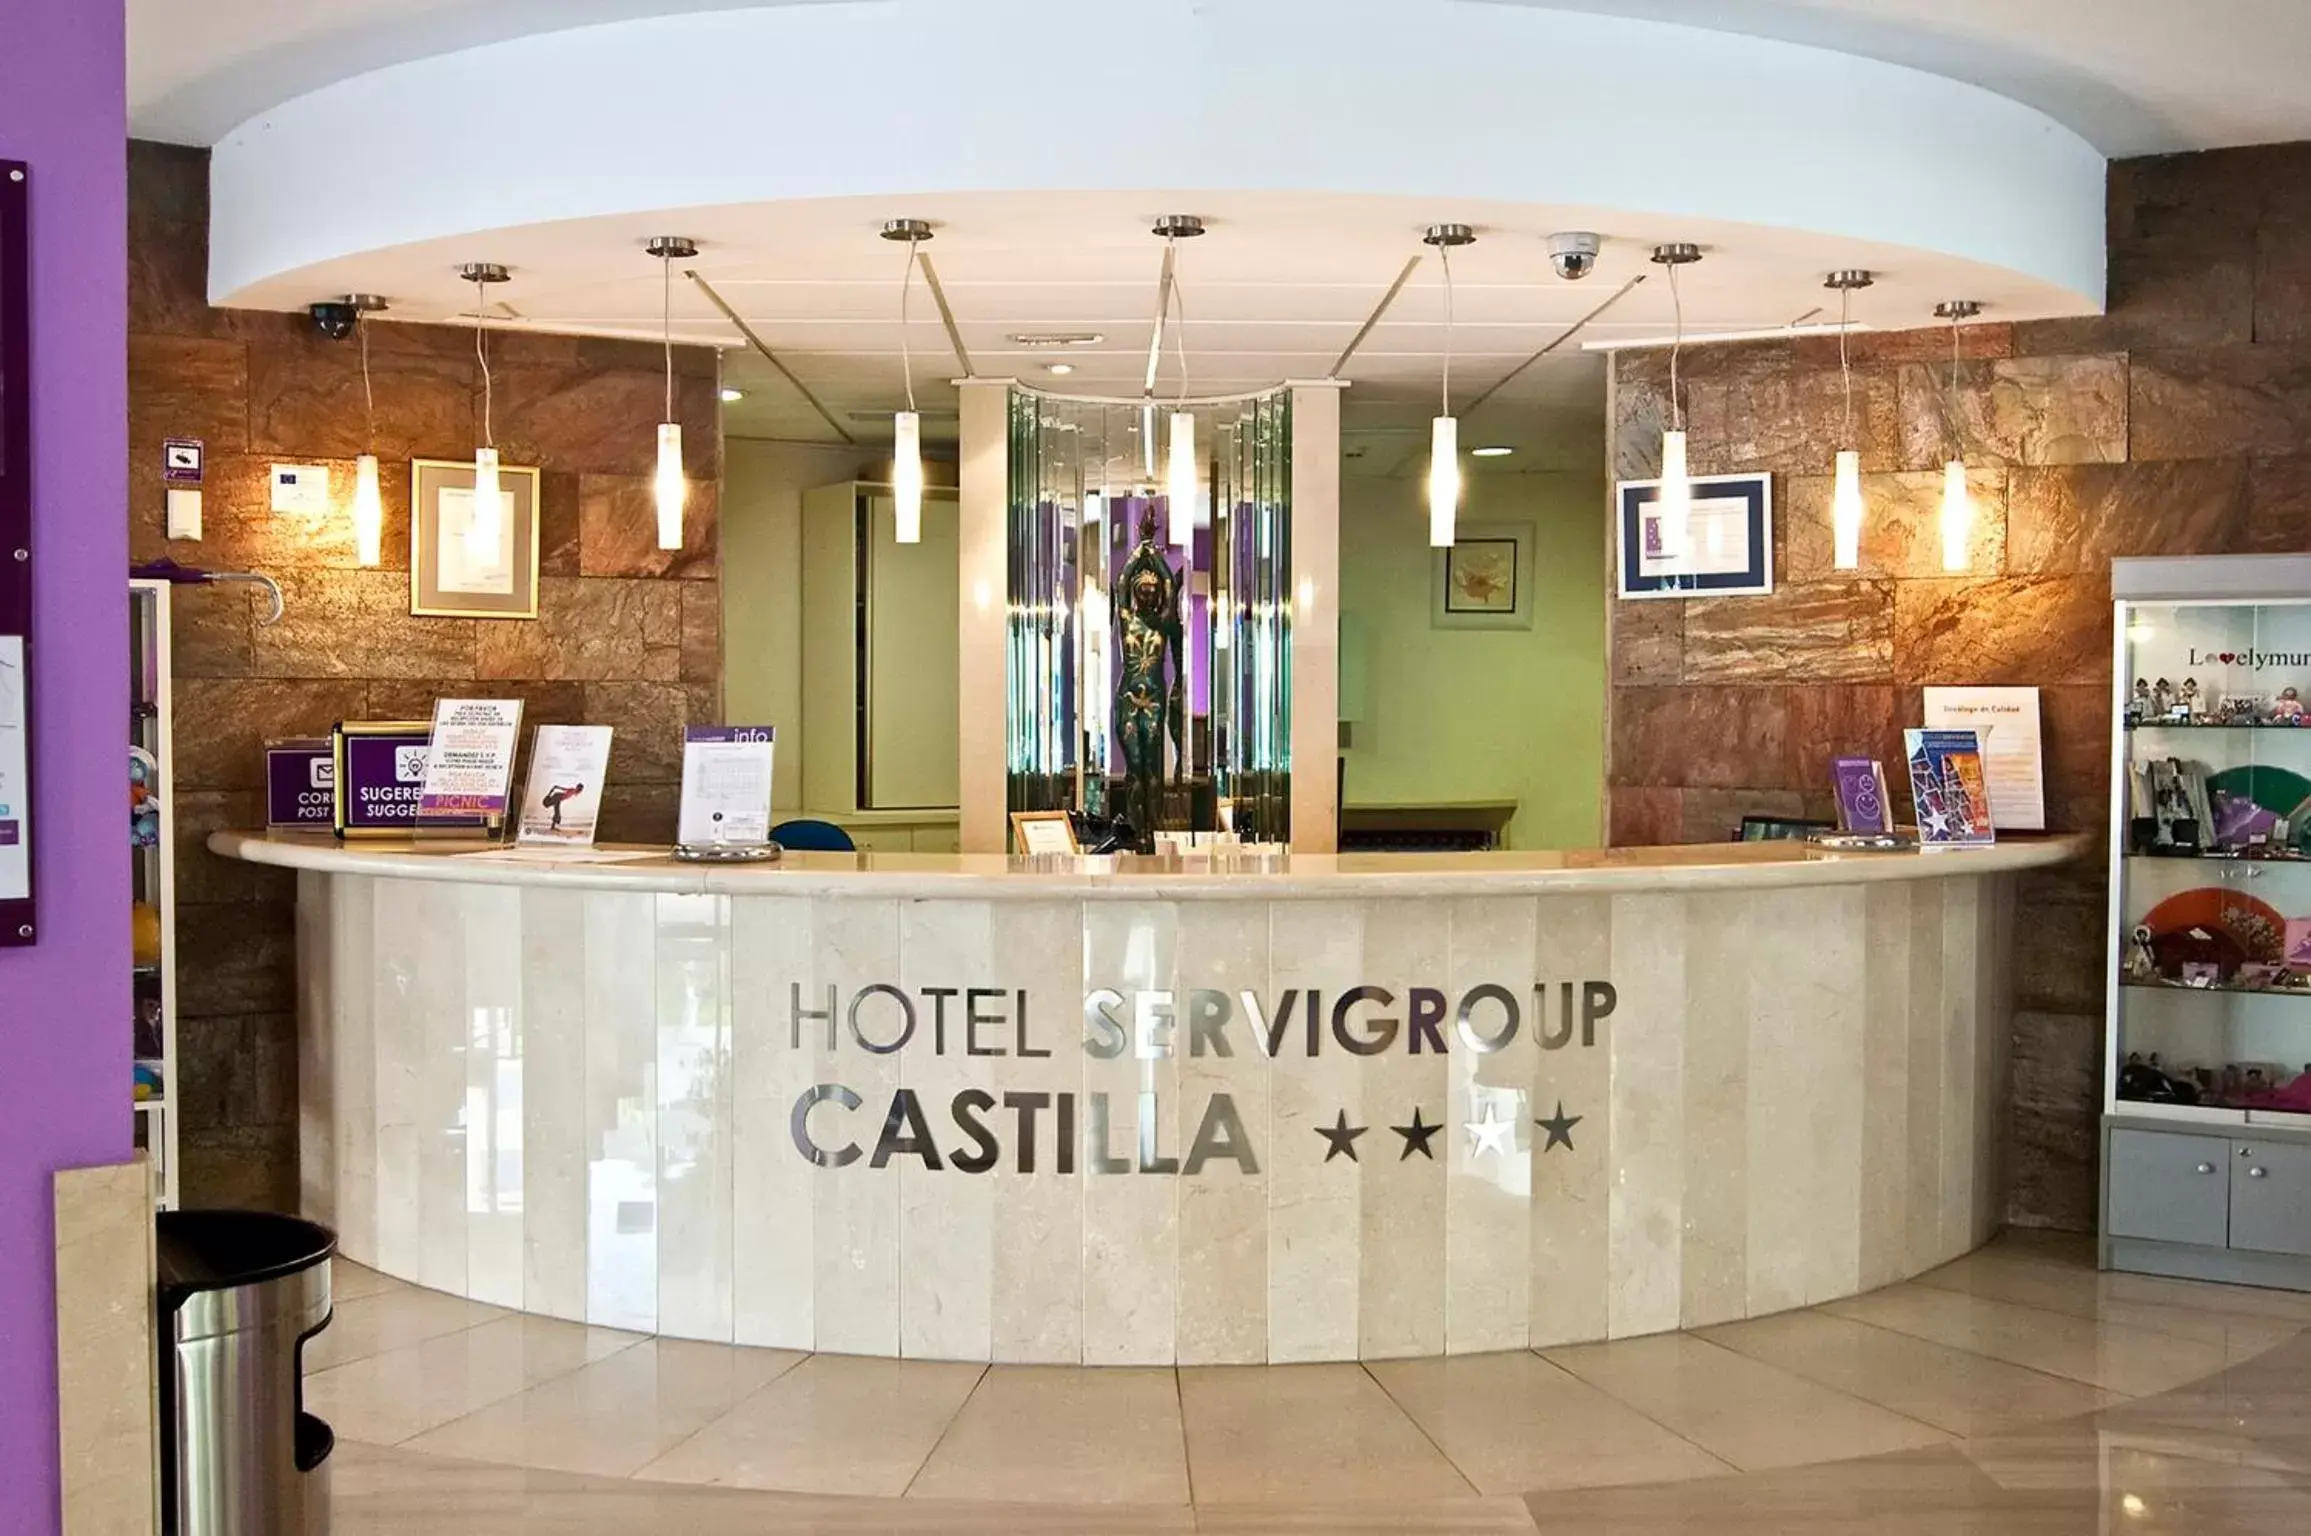 Lobby or reception in Hotel Servigroup Castilla